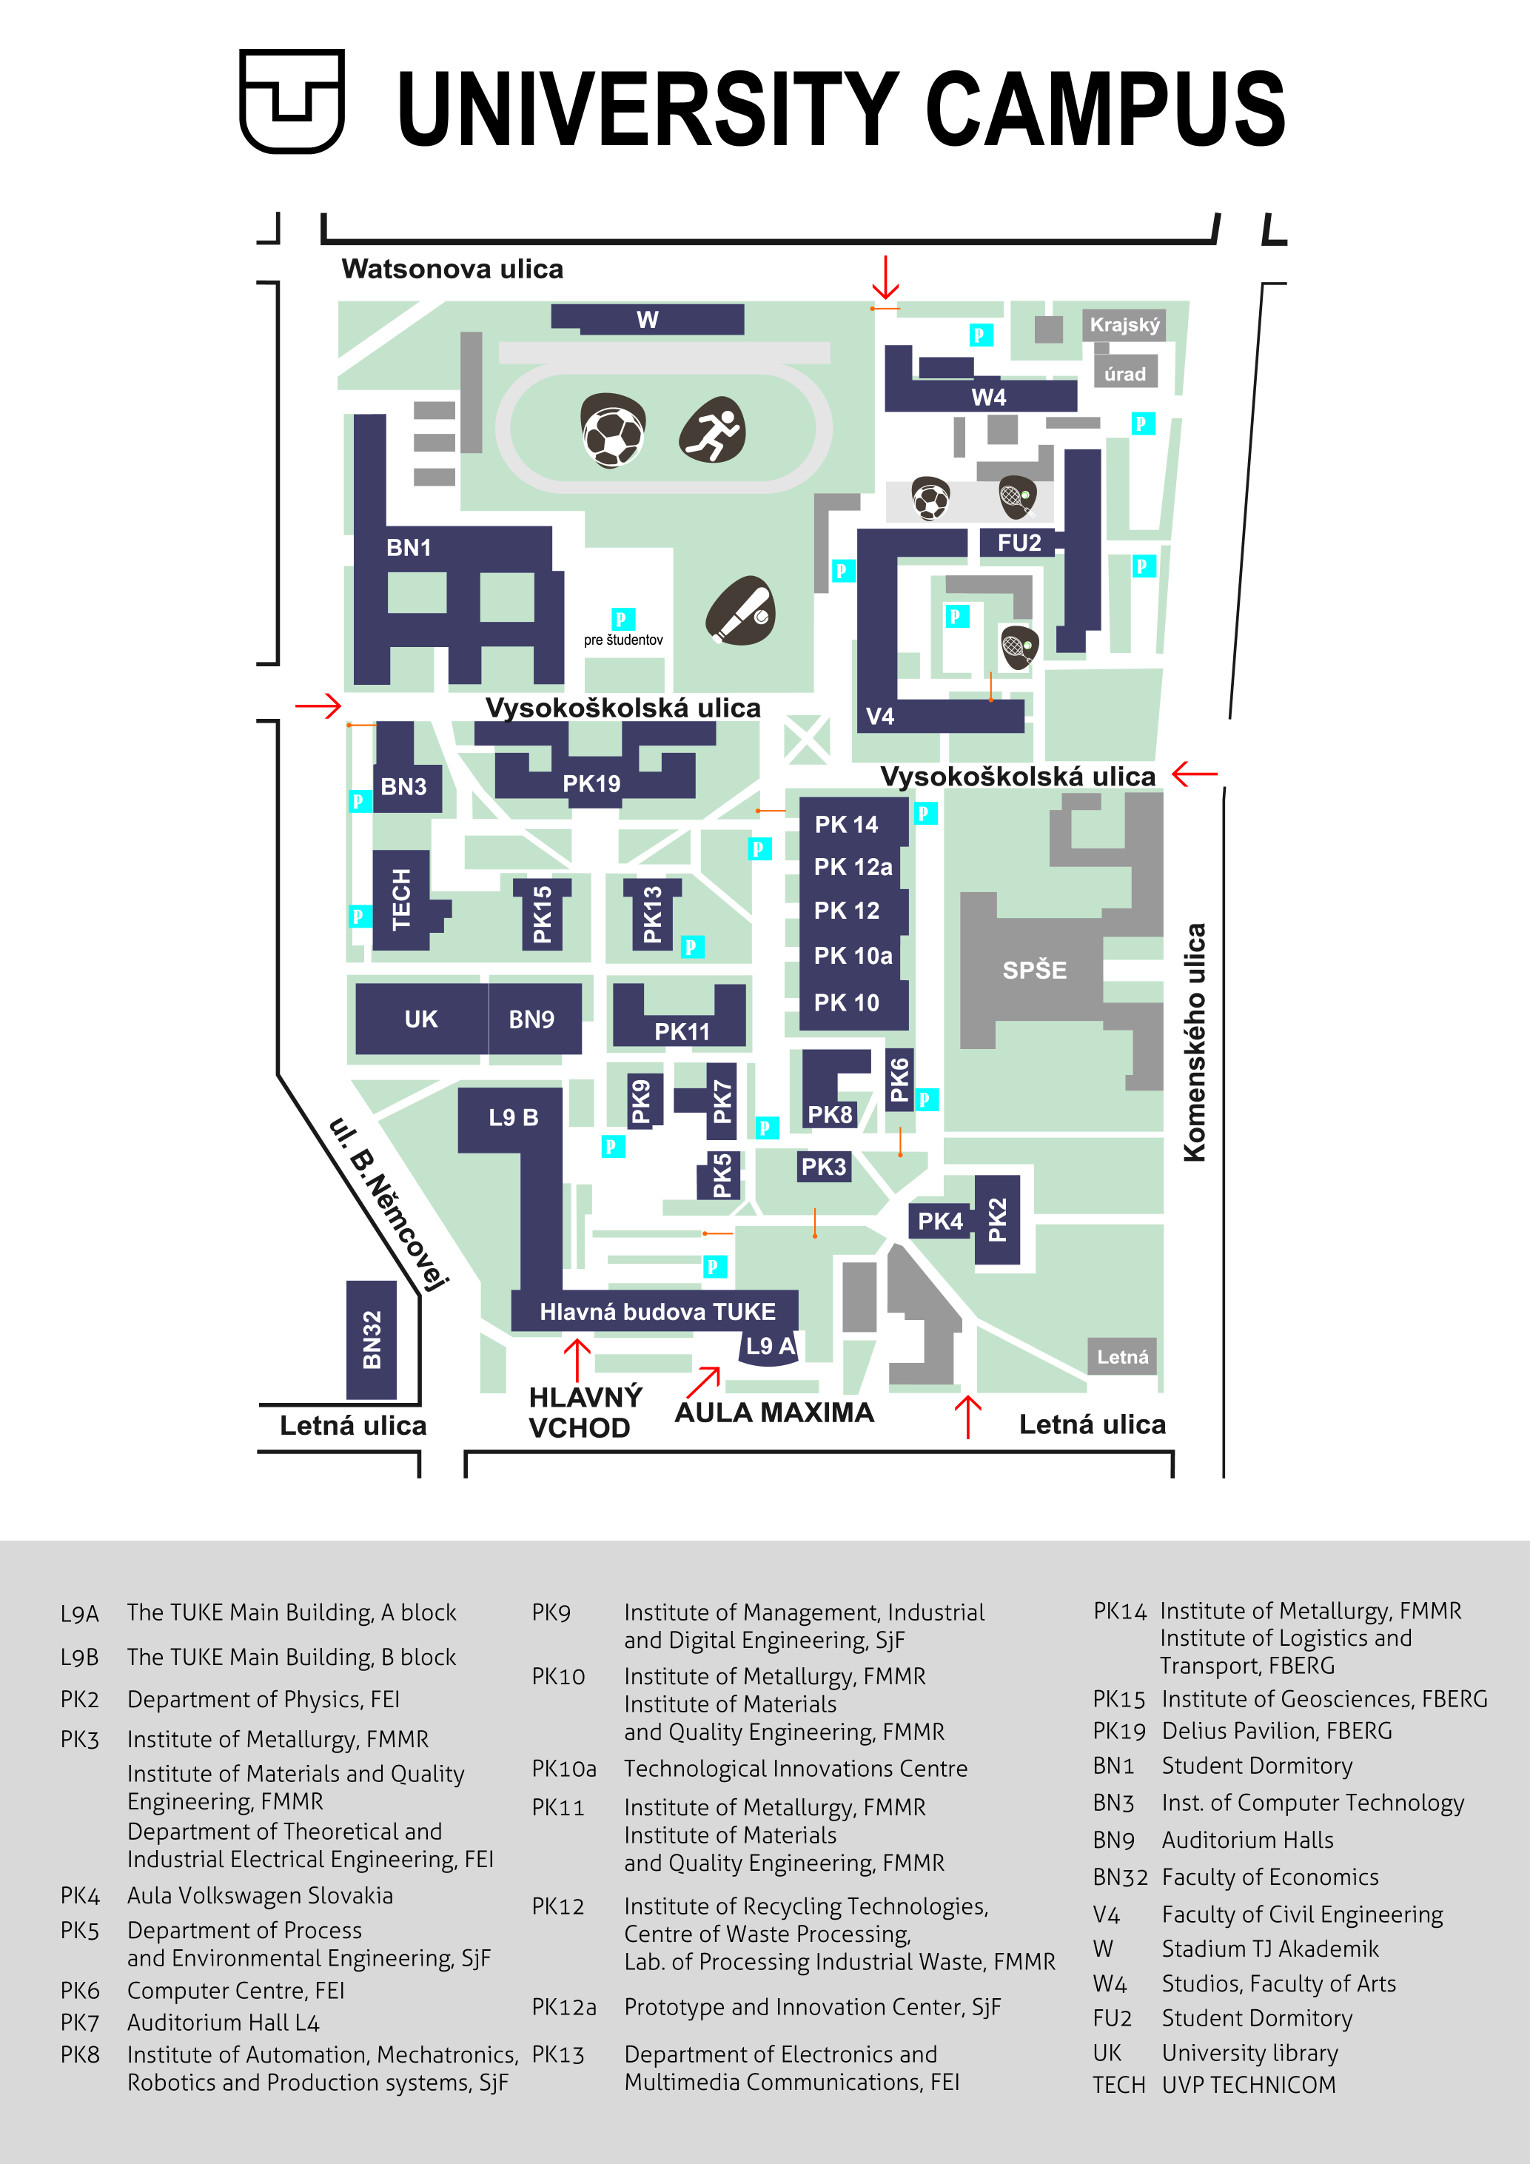 TUKE - Campus Map